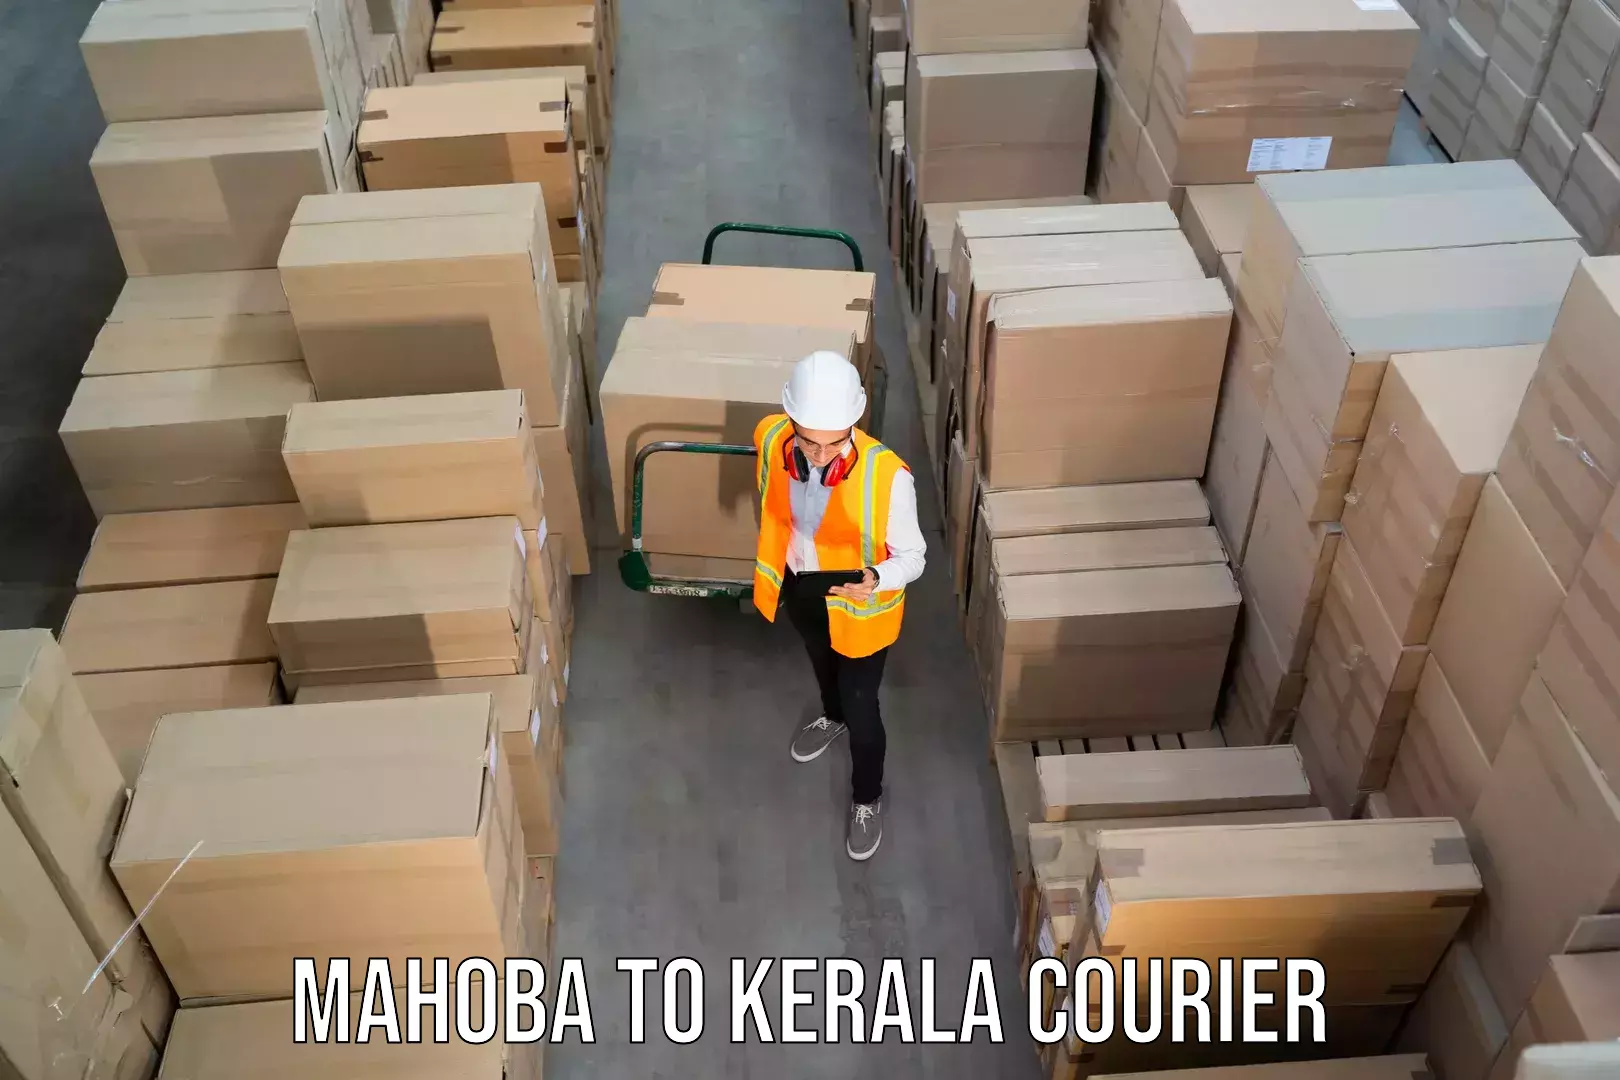 Courier service comparison Mahoba to Kuttikol